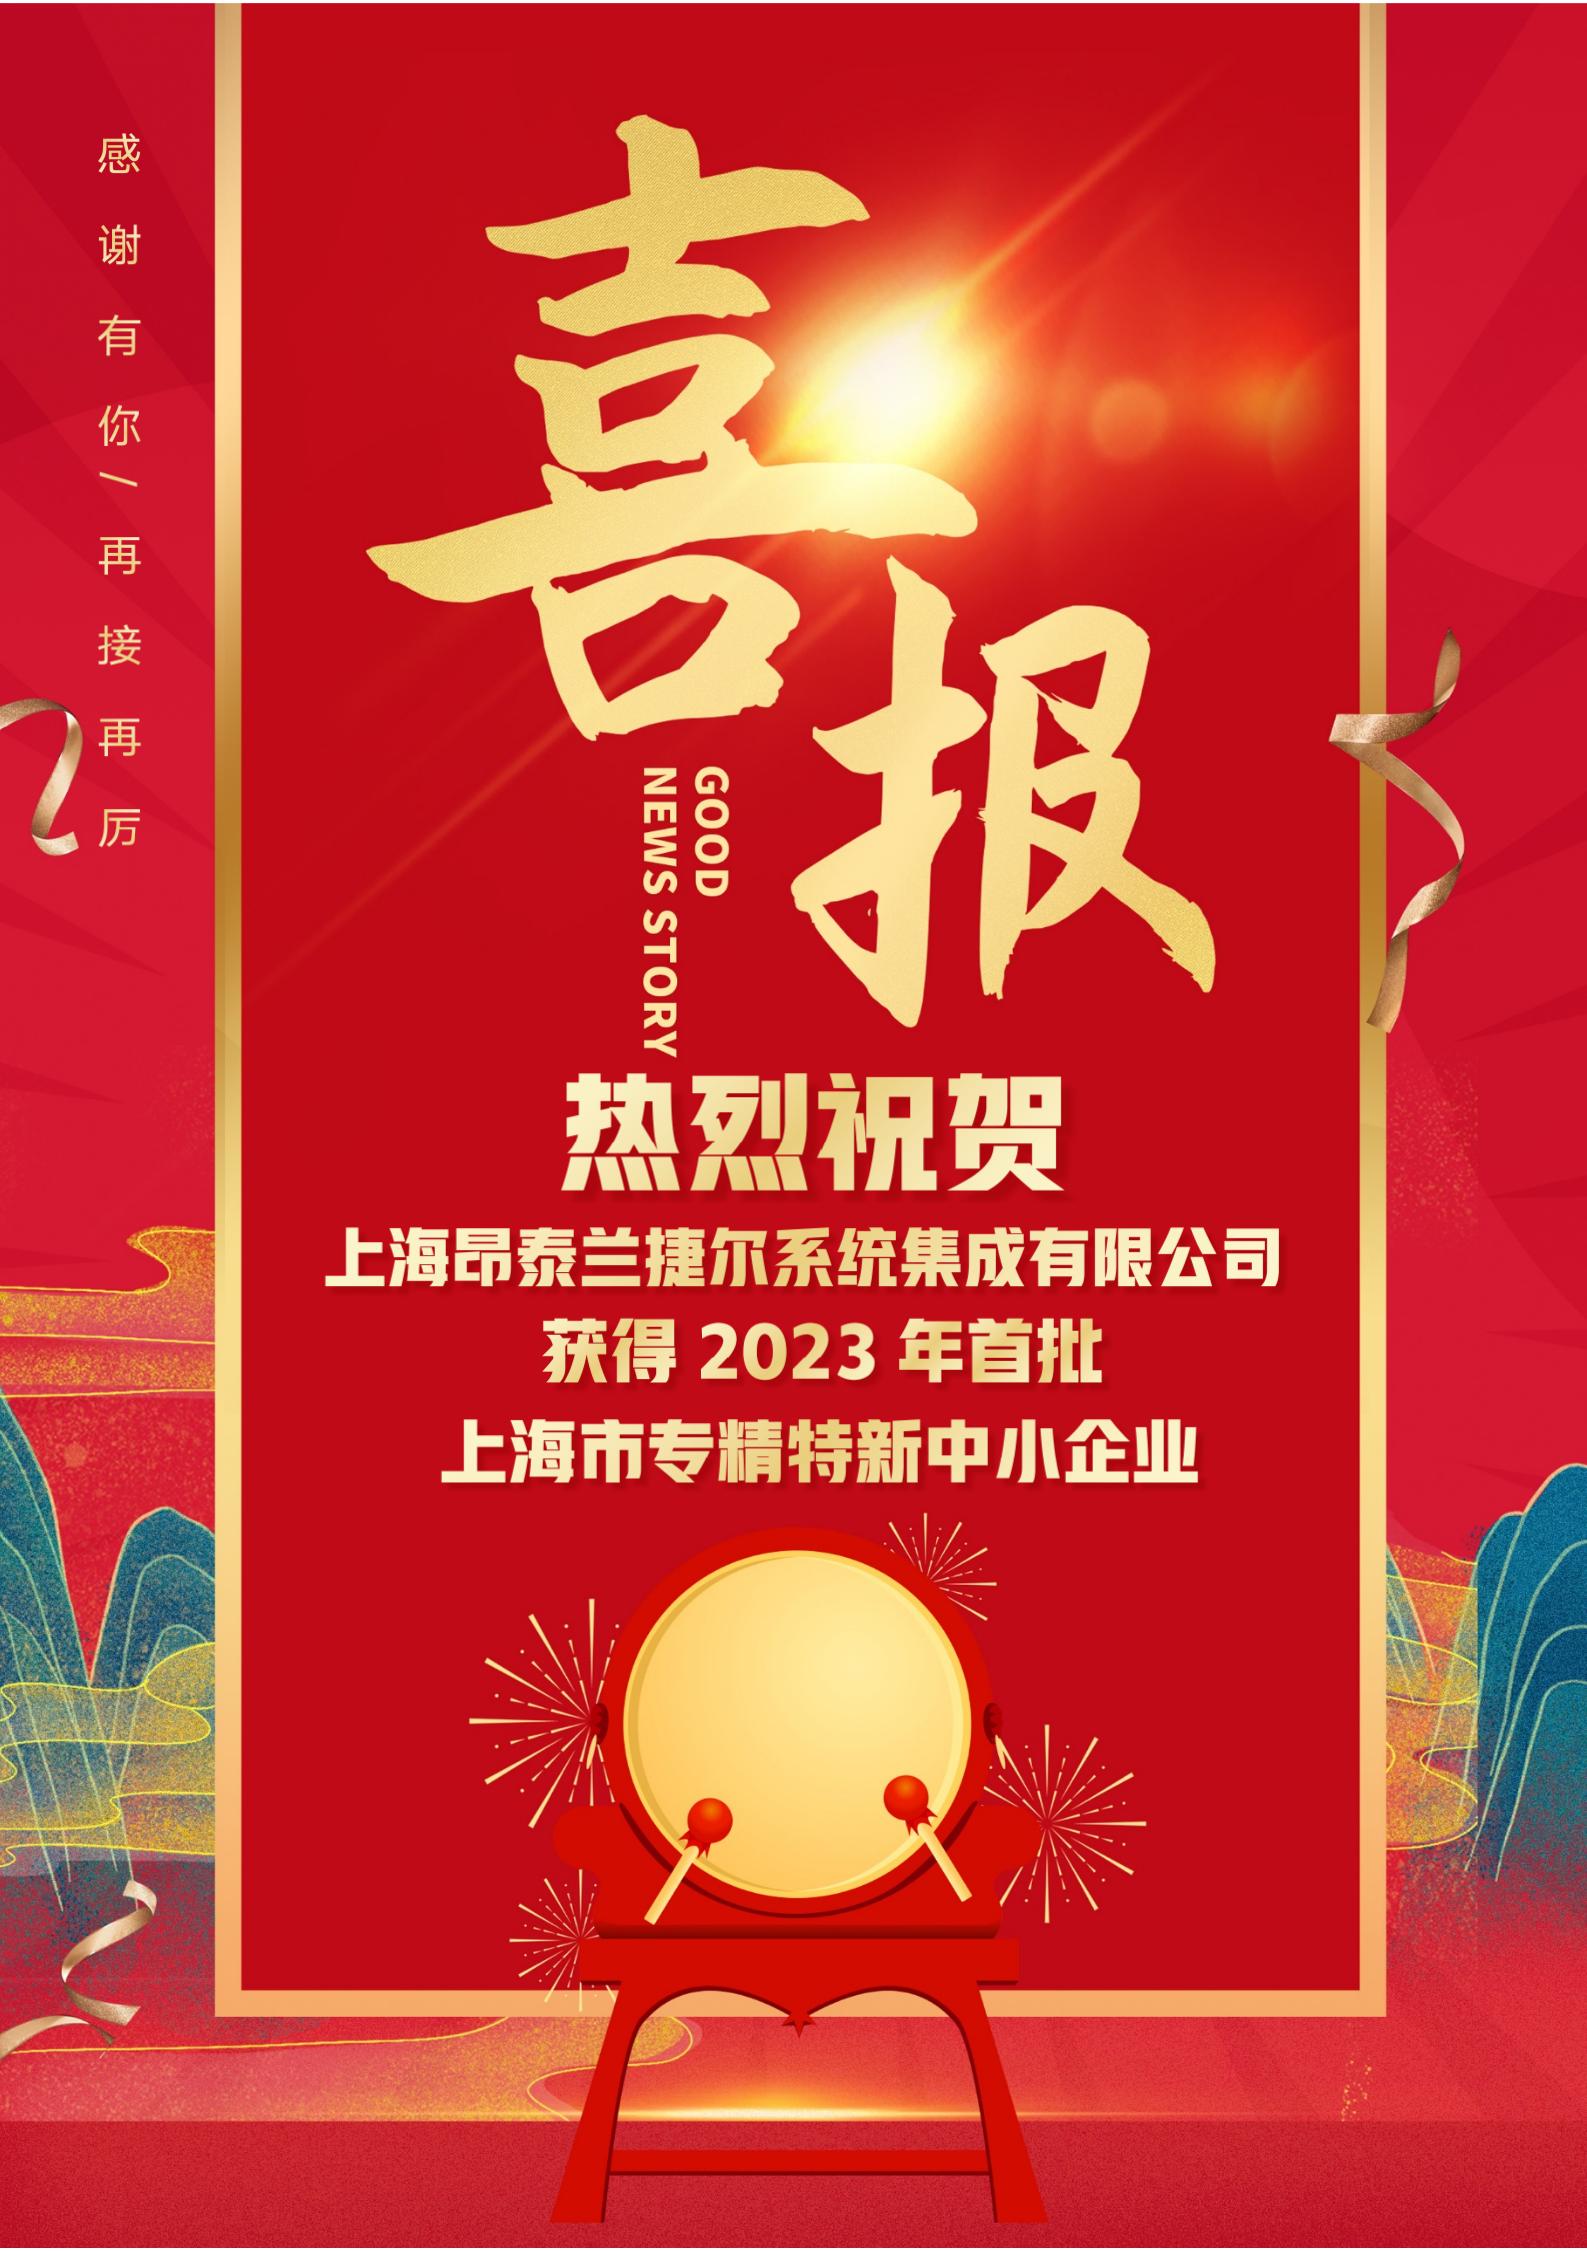 上海昂泰兰捷尔系统集成有限公司获得2023年第一批市专精特新中小企业